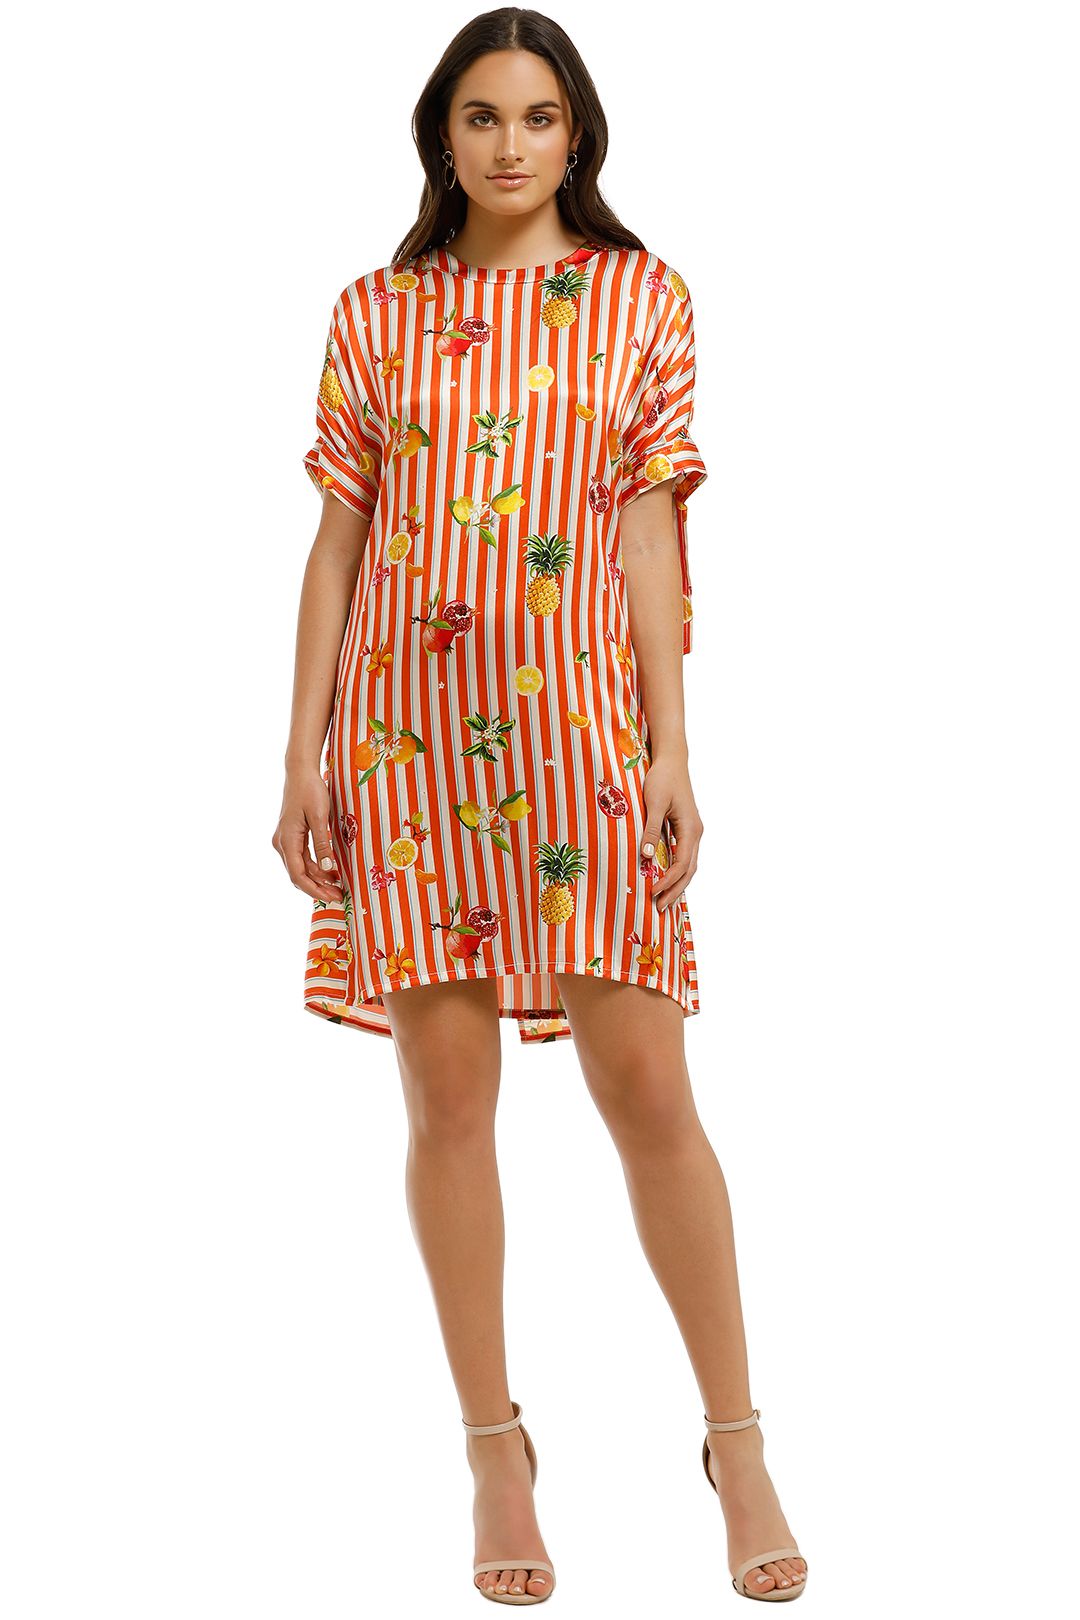 Cooper-By-Trelise-Cooper-Sunset-Shift-Dress-Orange-Stripe-Front